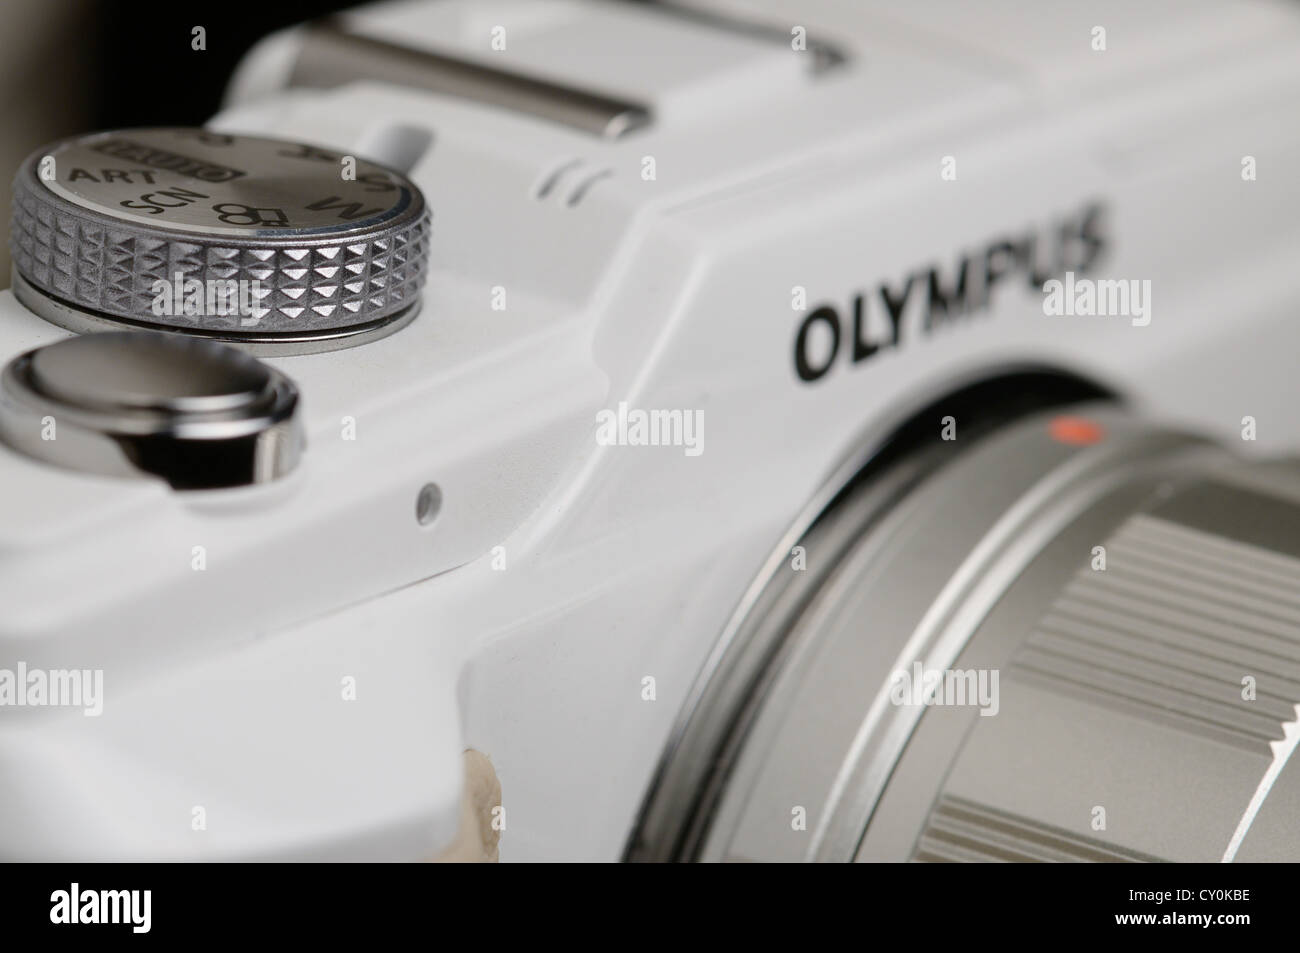 Un micro portable 4/3rds appareil photo numérique Olympus Banque D'Images